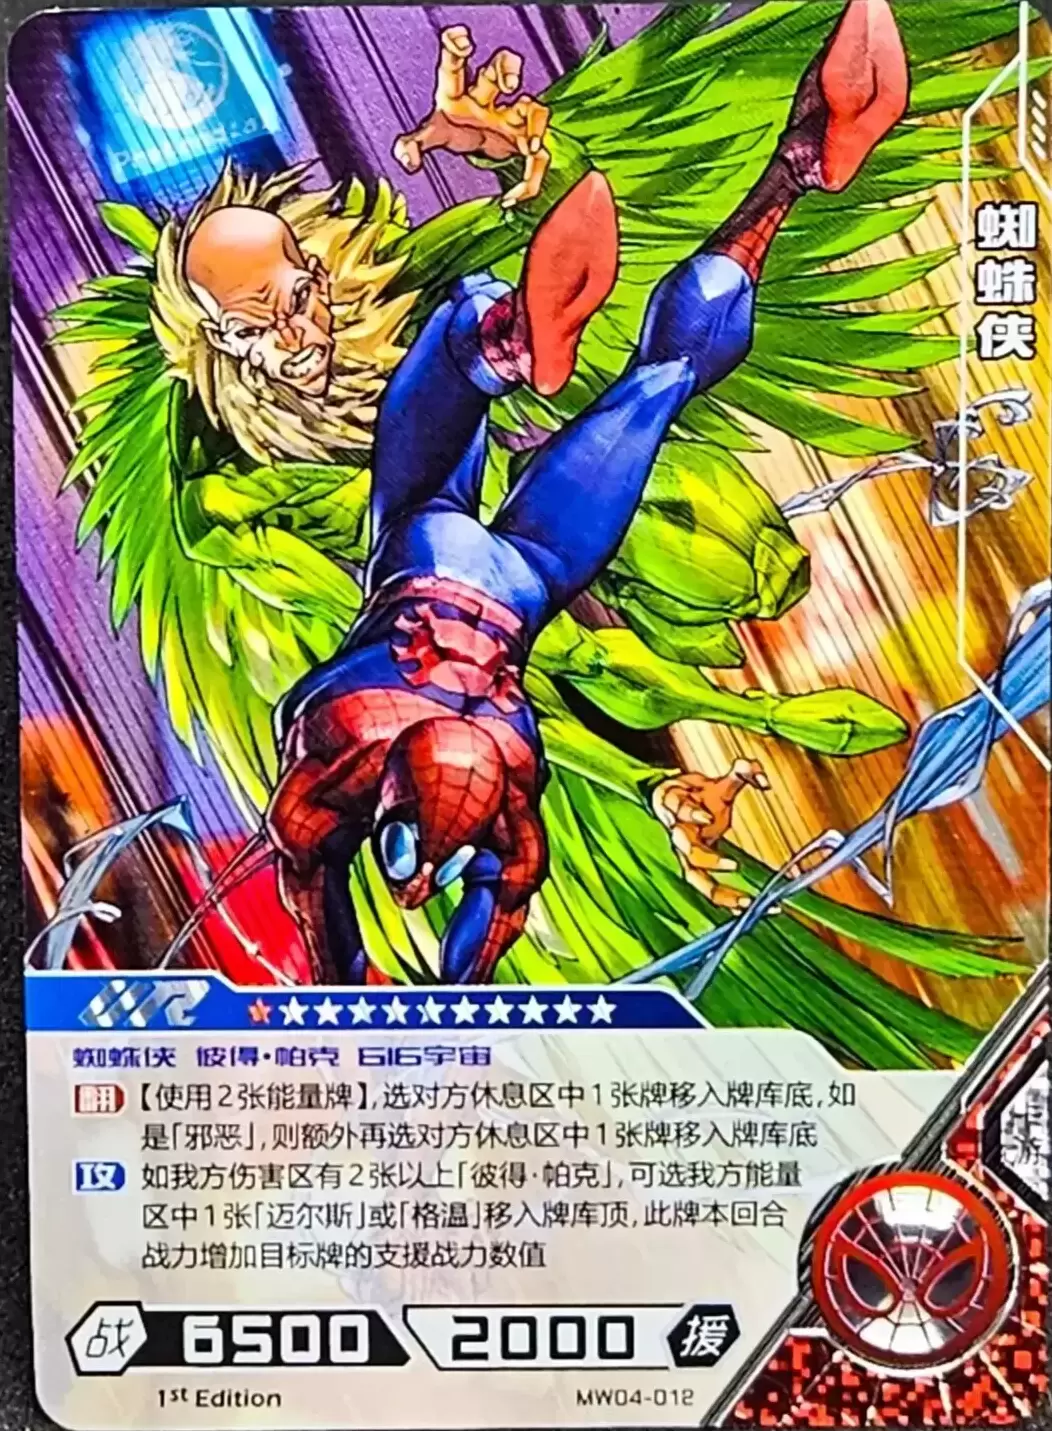 Kayou Marvel Hero Battle - Spider-Man & Vulture